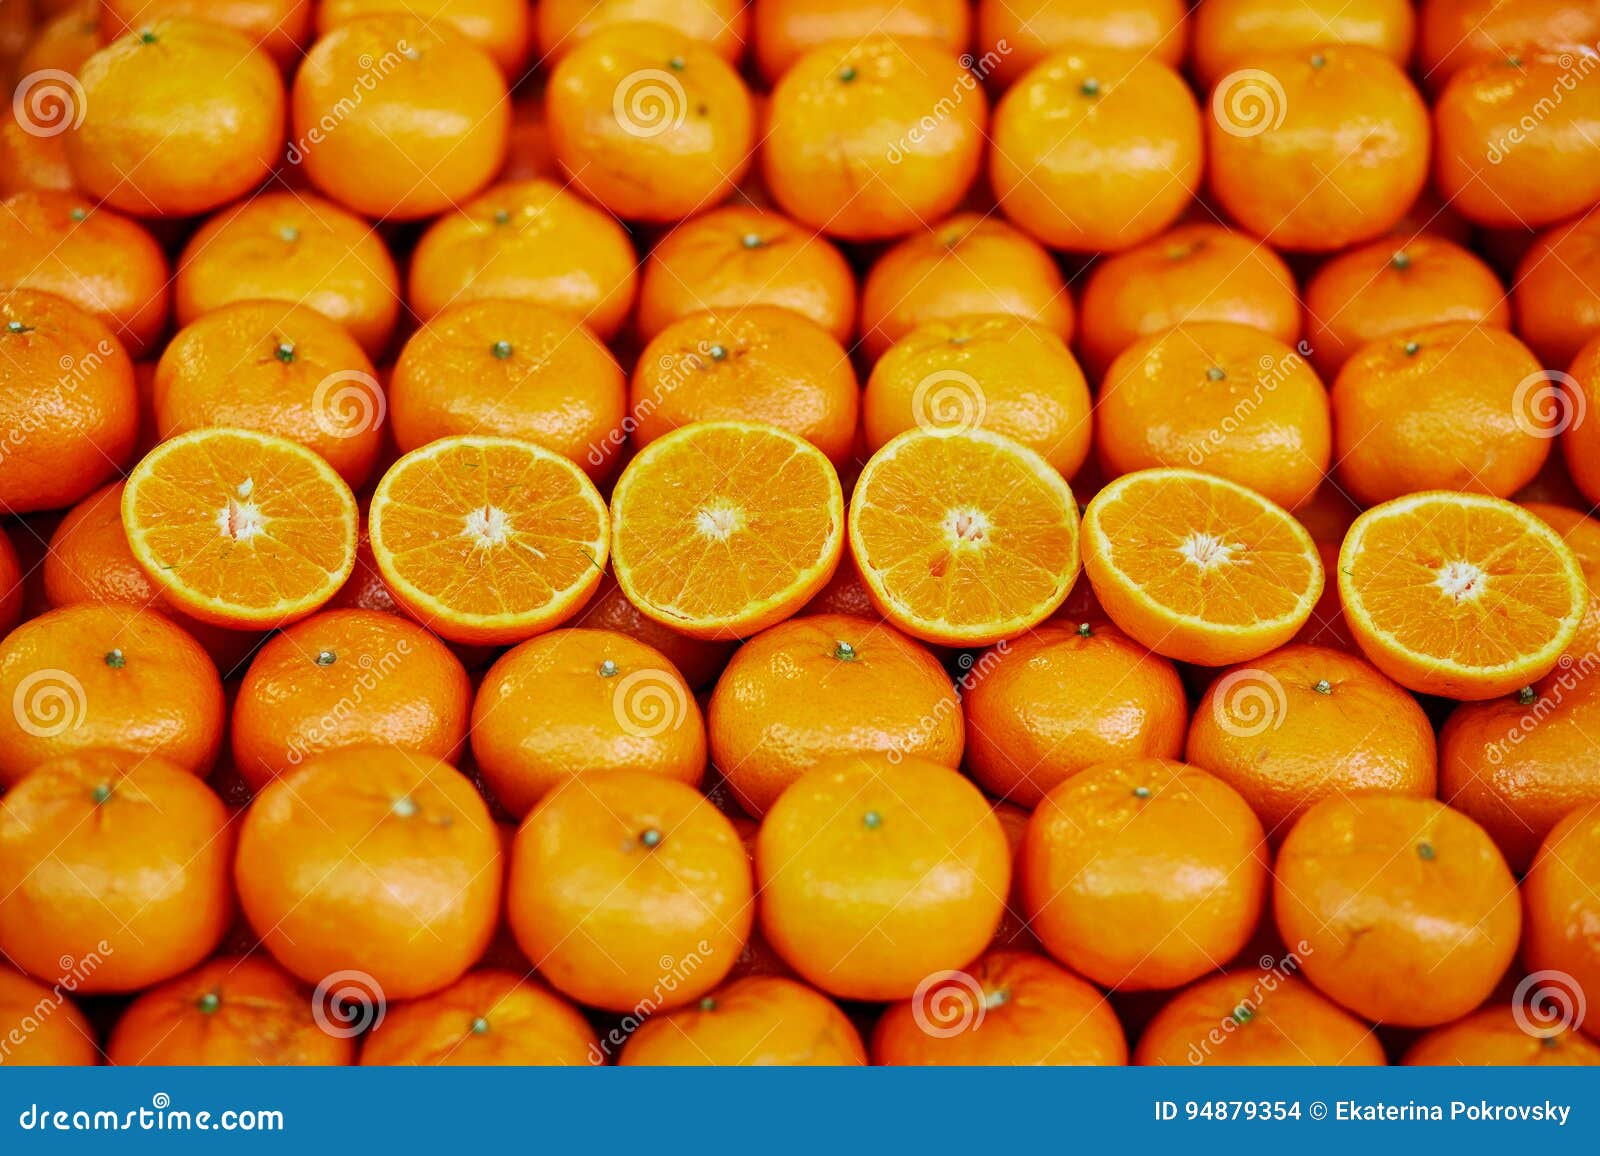 Apelsiner på bonde marknadsför i Paris, Frankrike. Stor hög av nya mogna organiska apelsiner på bondemarknad i Paris, Frankrike